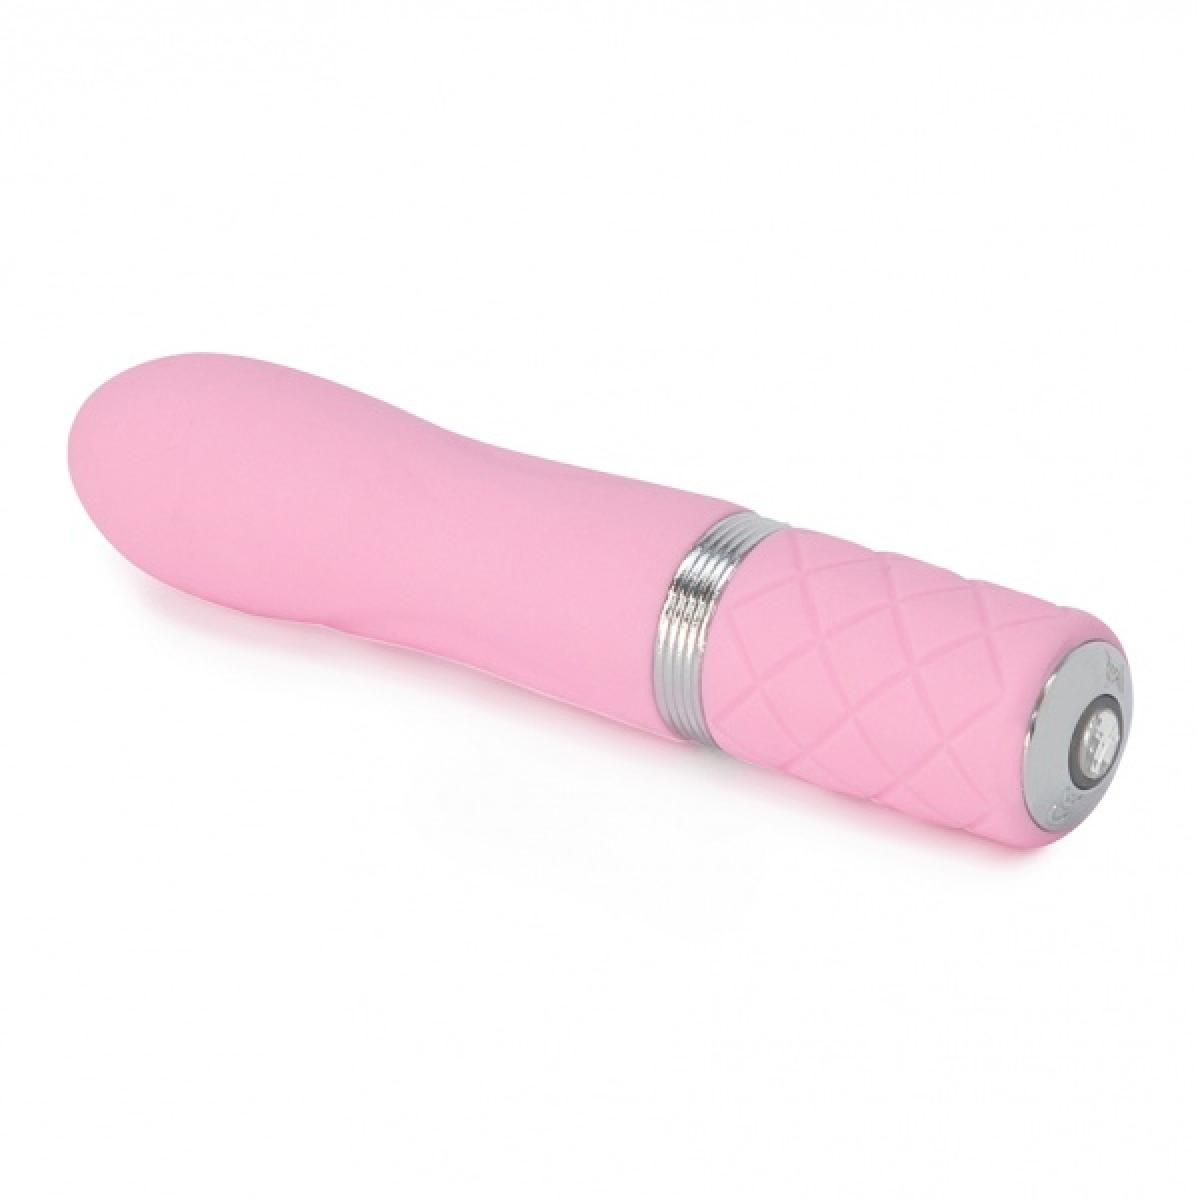 PILLOW TALK Pillow Talk Flirty Mini-Vibrator - mini-vibratoren Pink